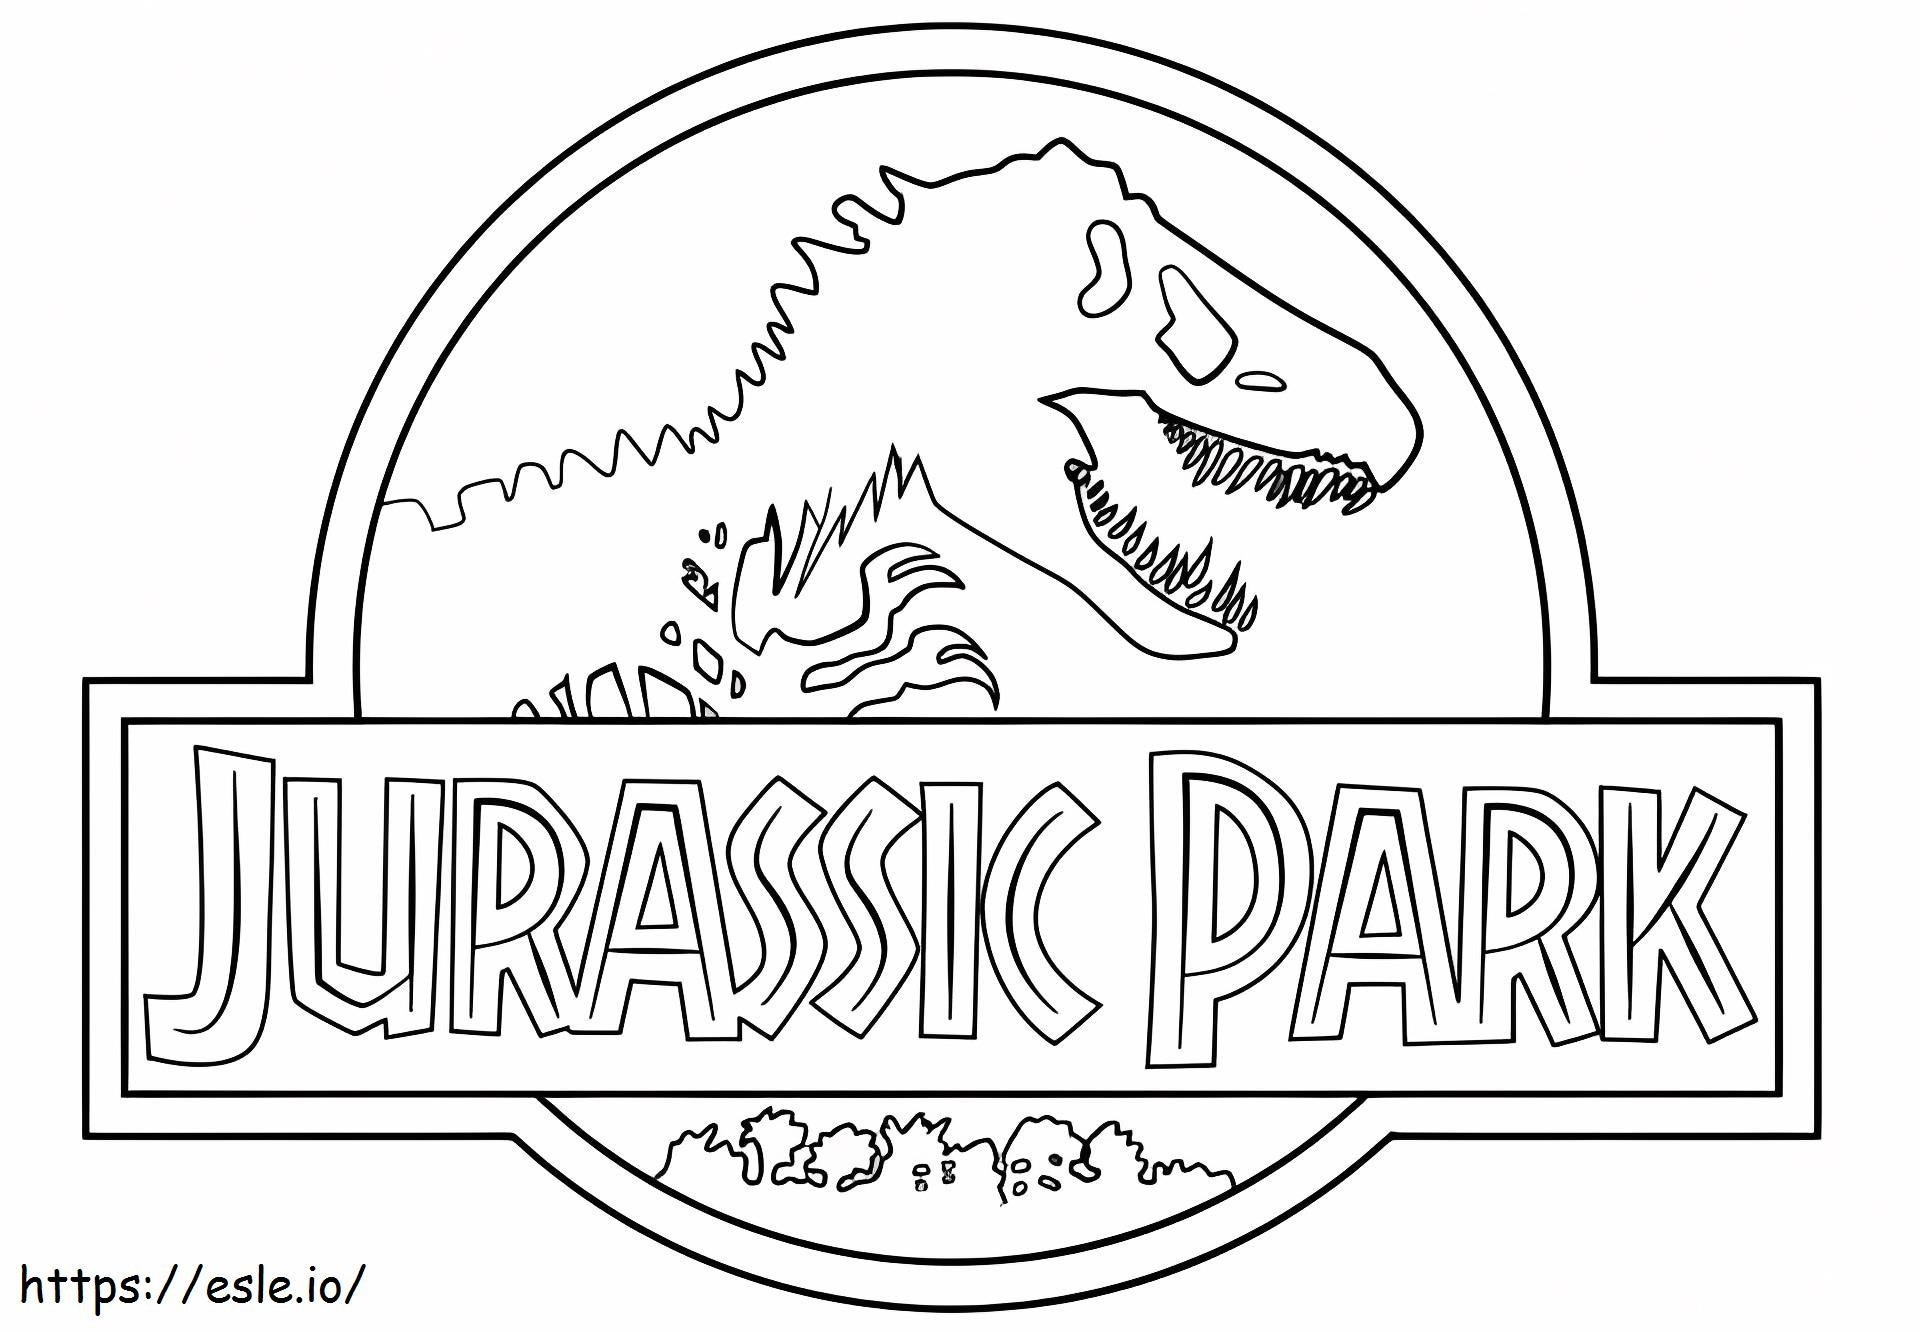 Jurassic Park logója kifestő